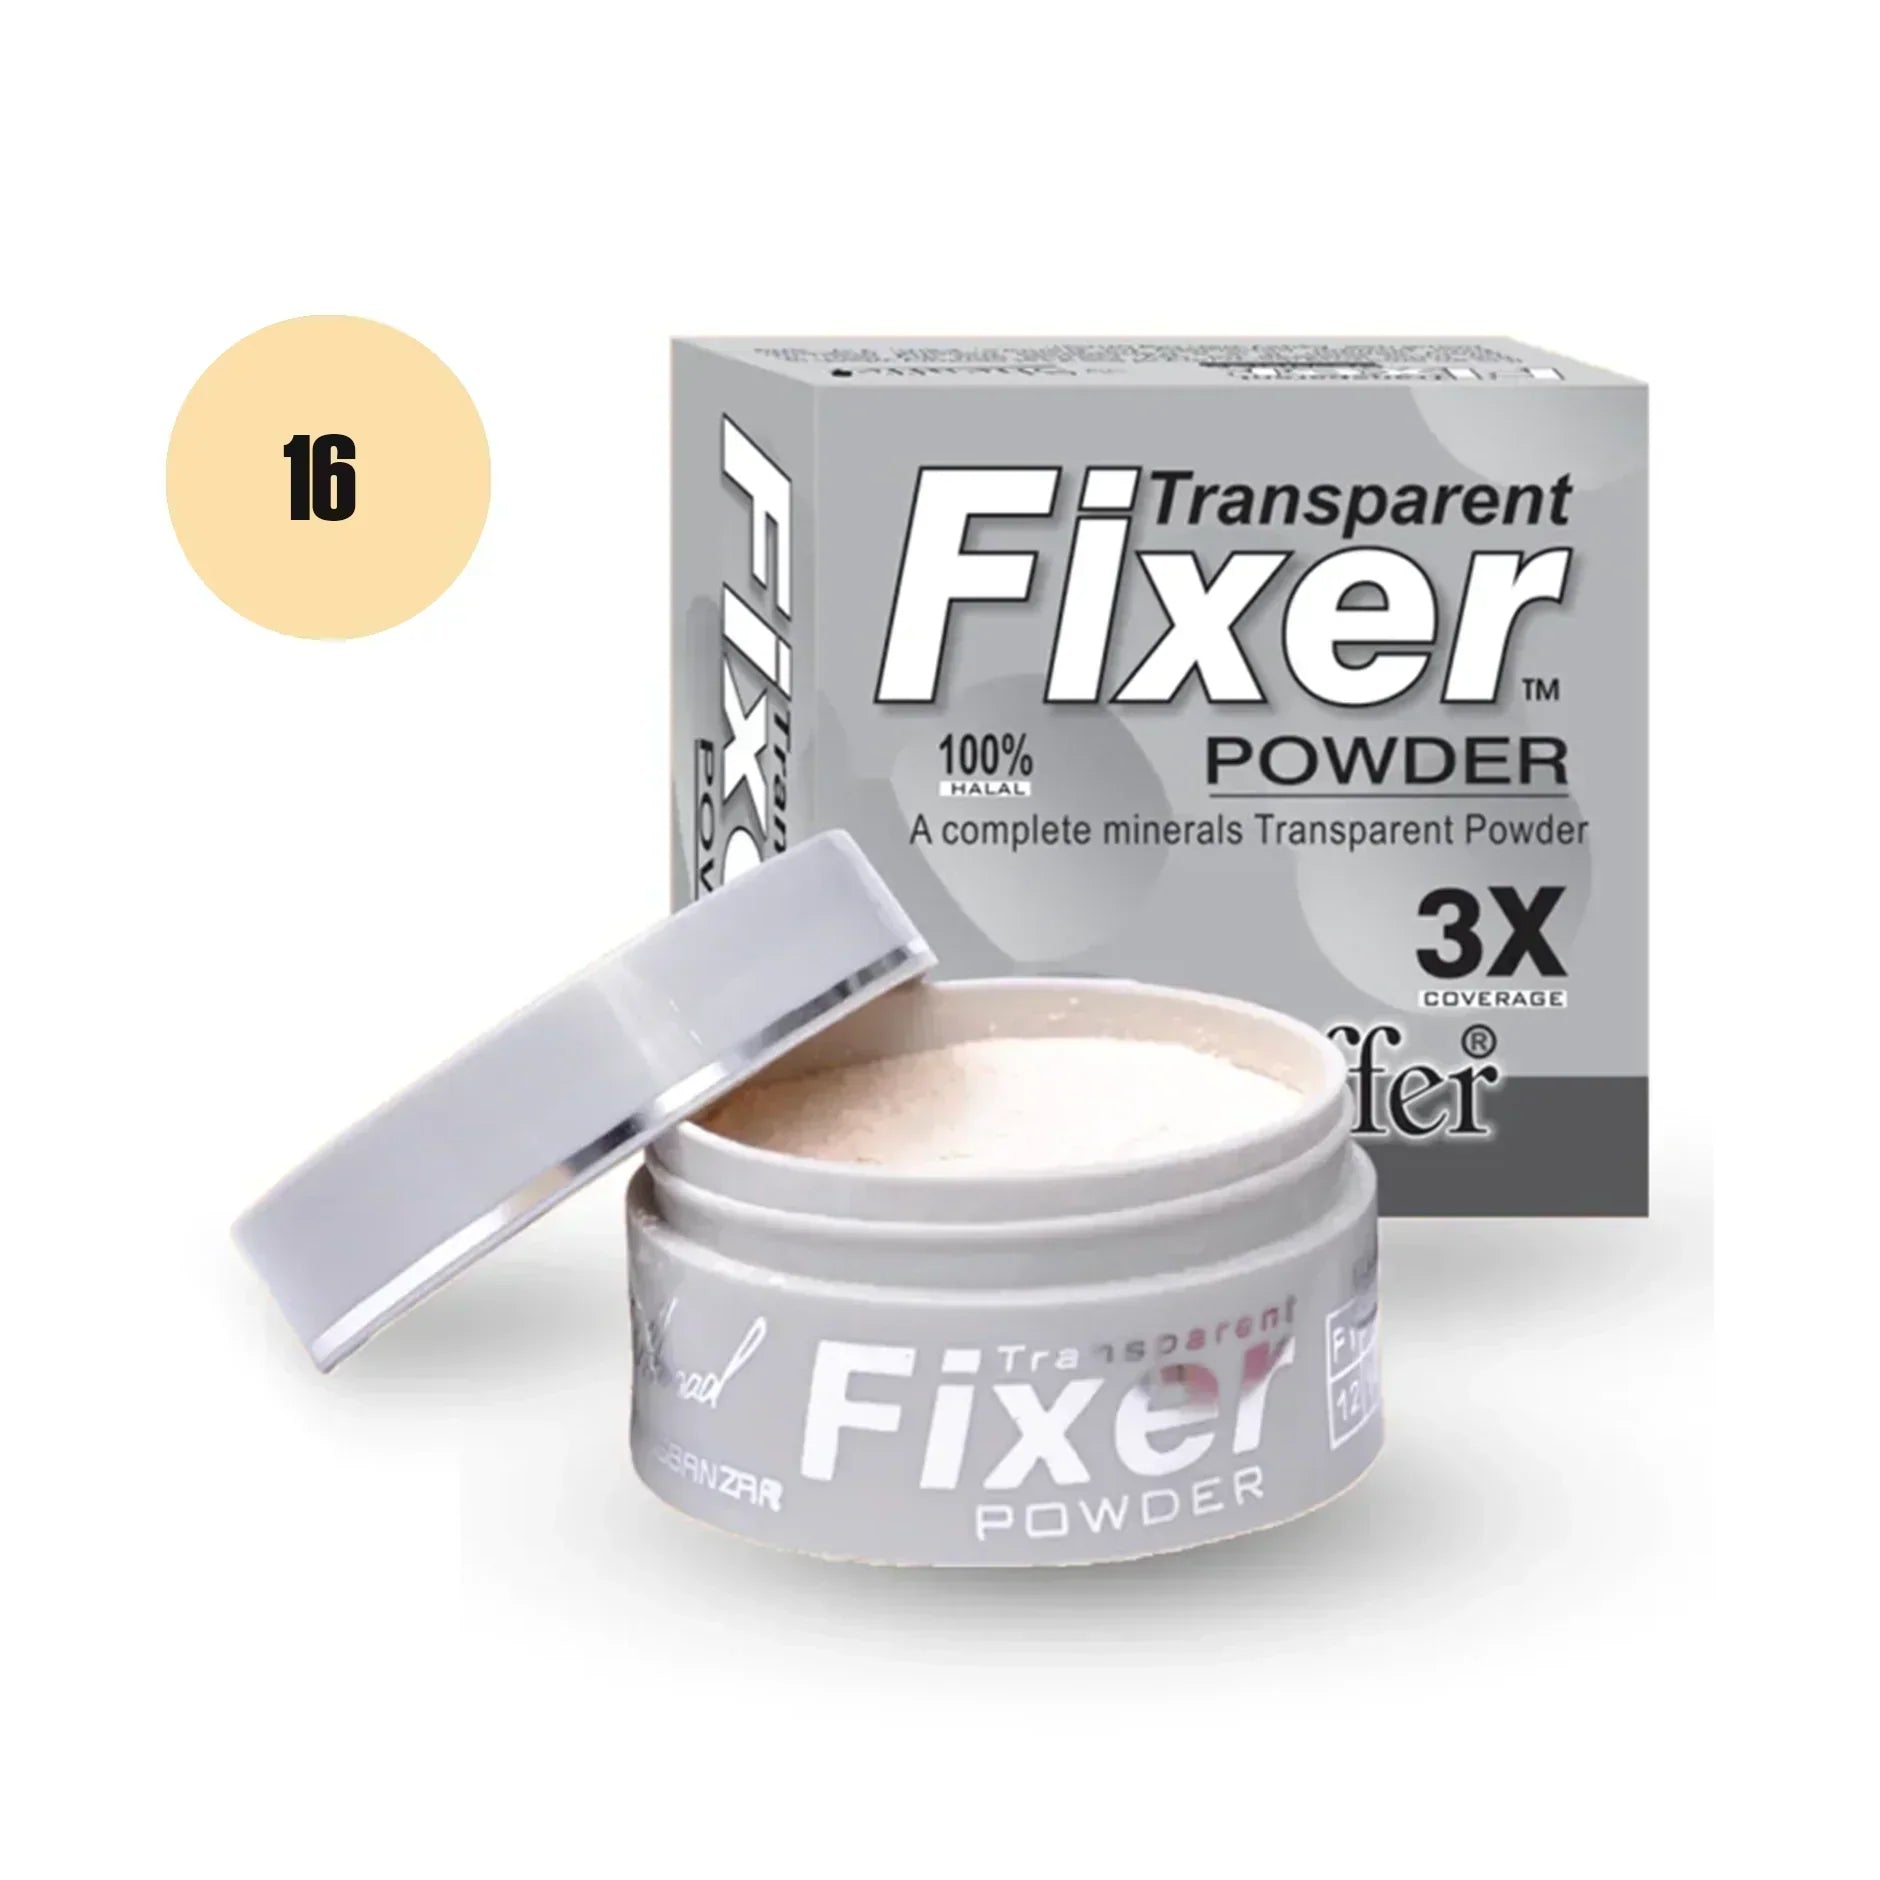 Sheaffer Transparent Fixer Powder Shade No 14 - Retailershop - Online Shopping Center